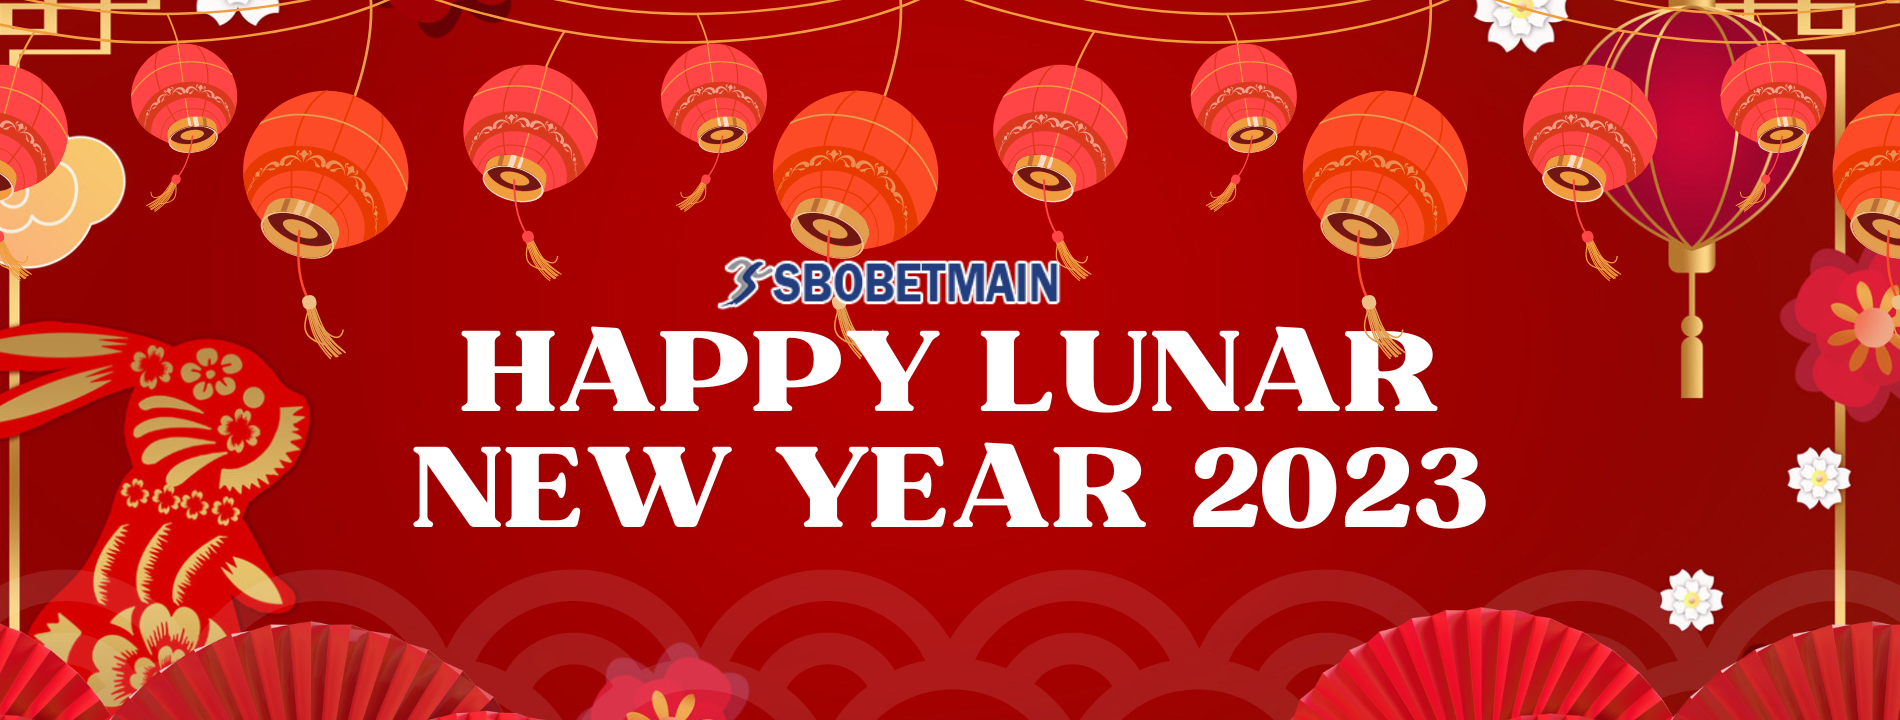 Happy Lunar Year 2023